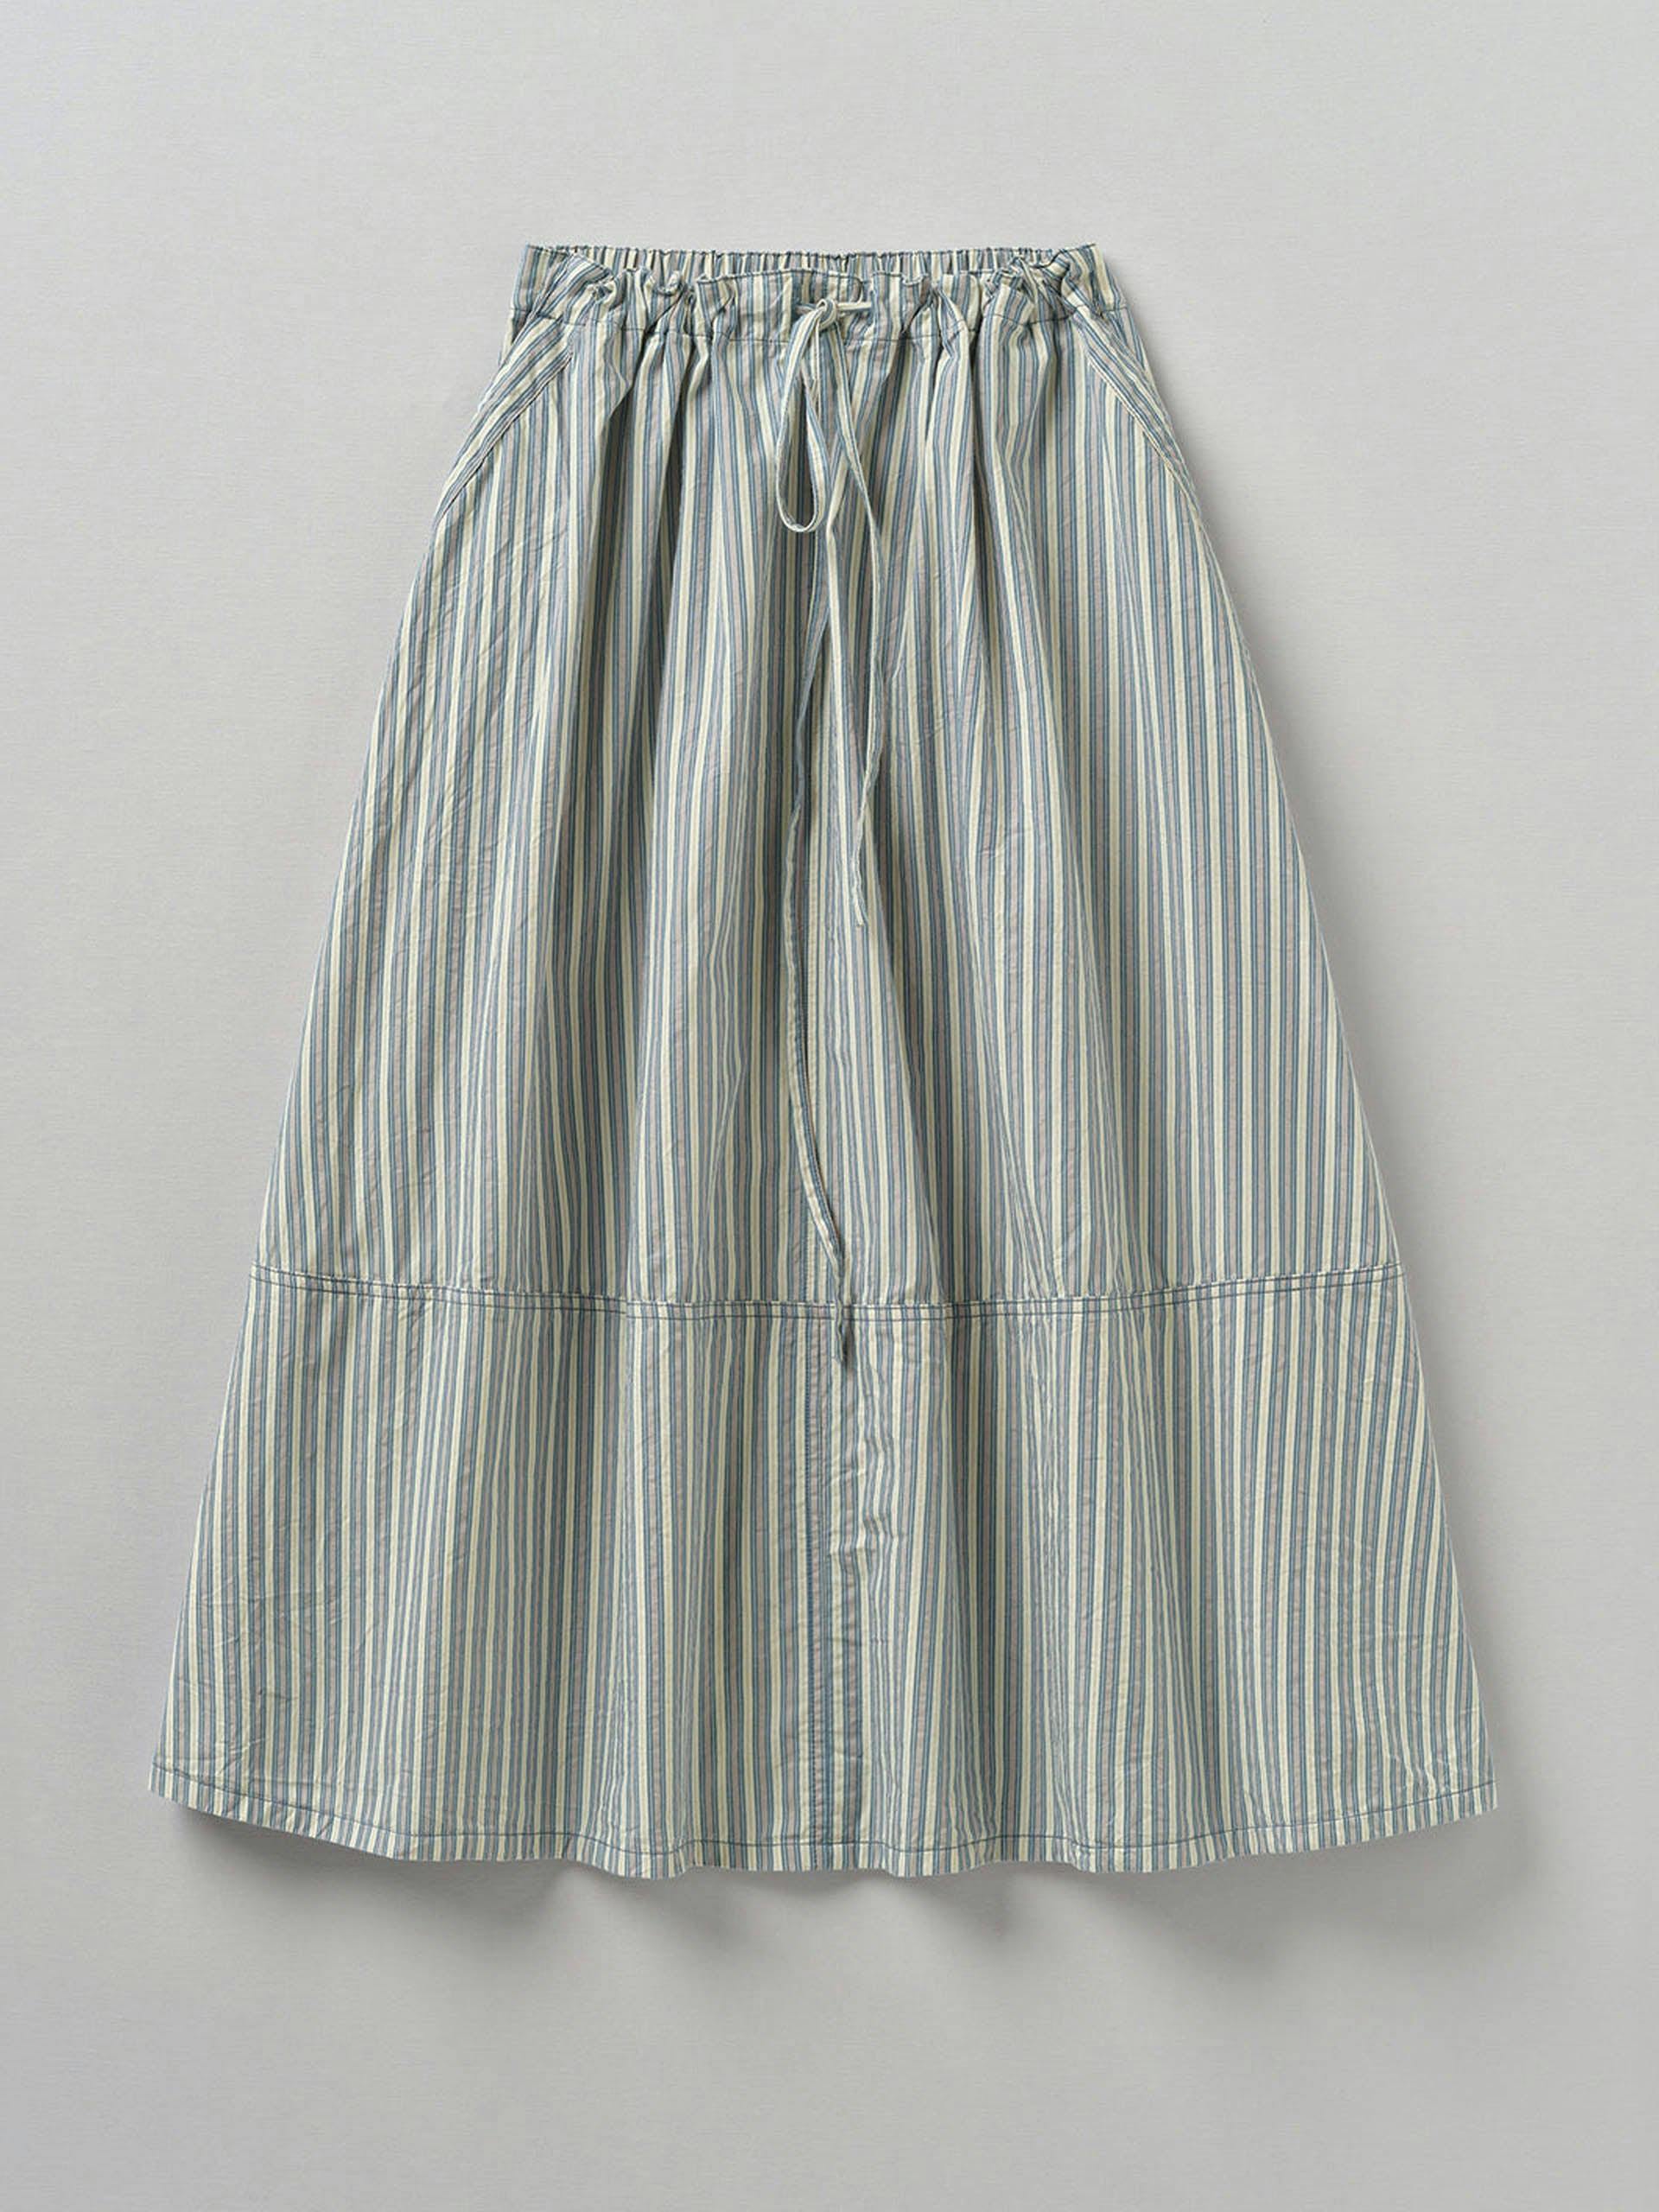 Striped crinkle drawstring skirt